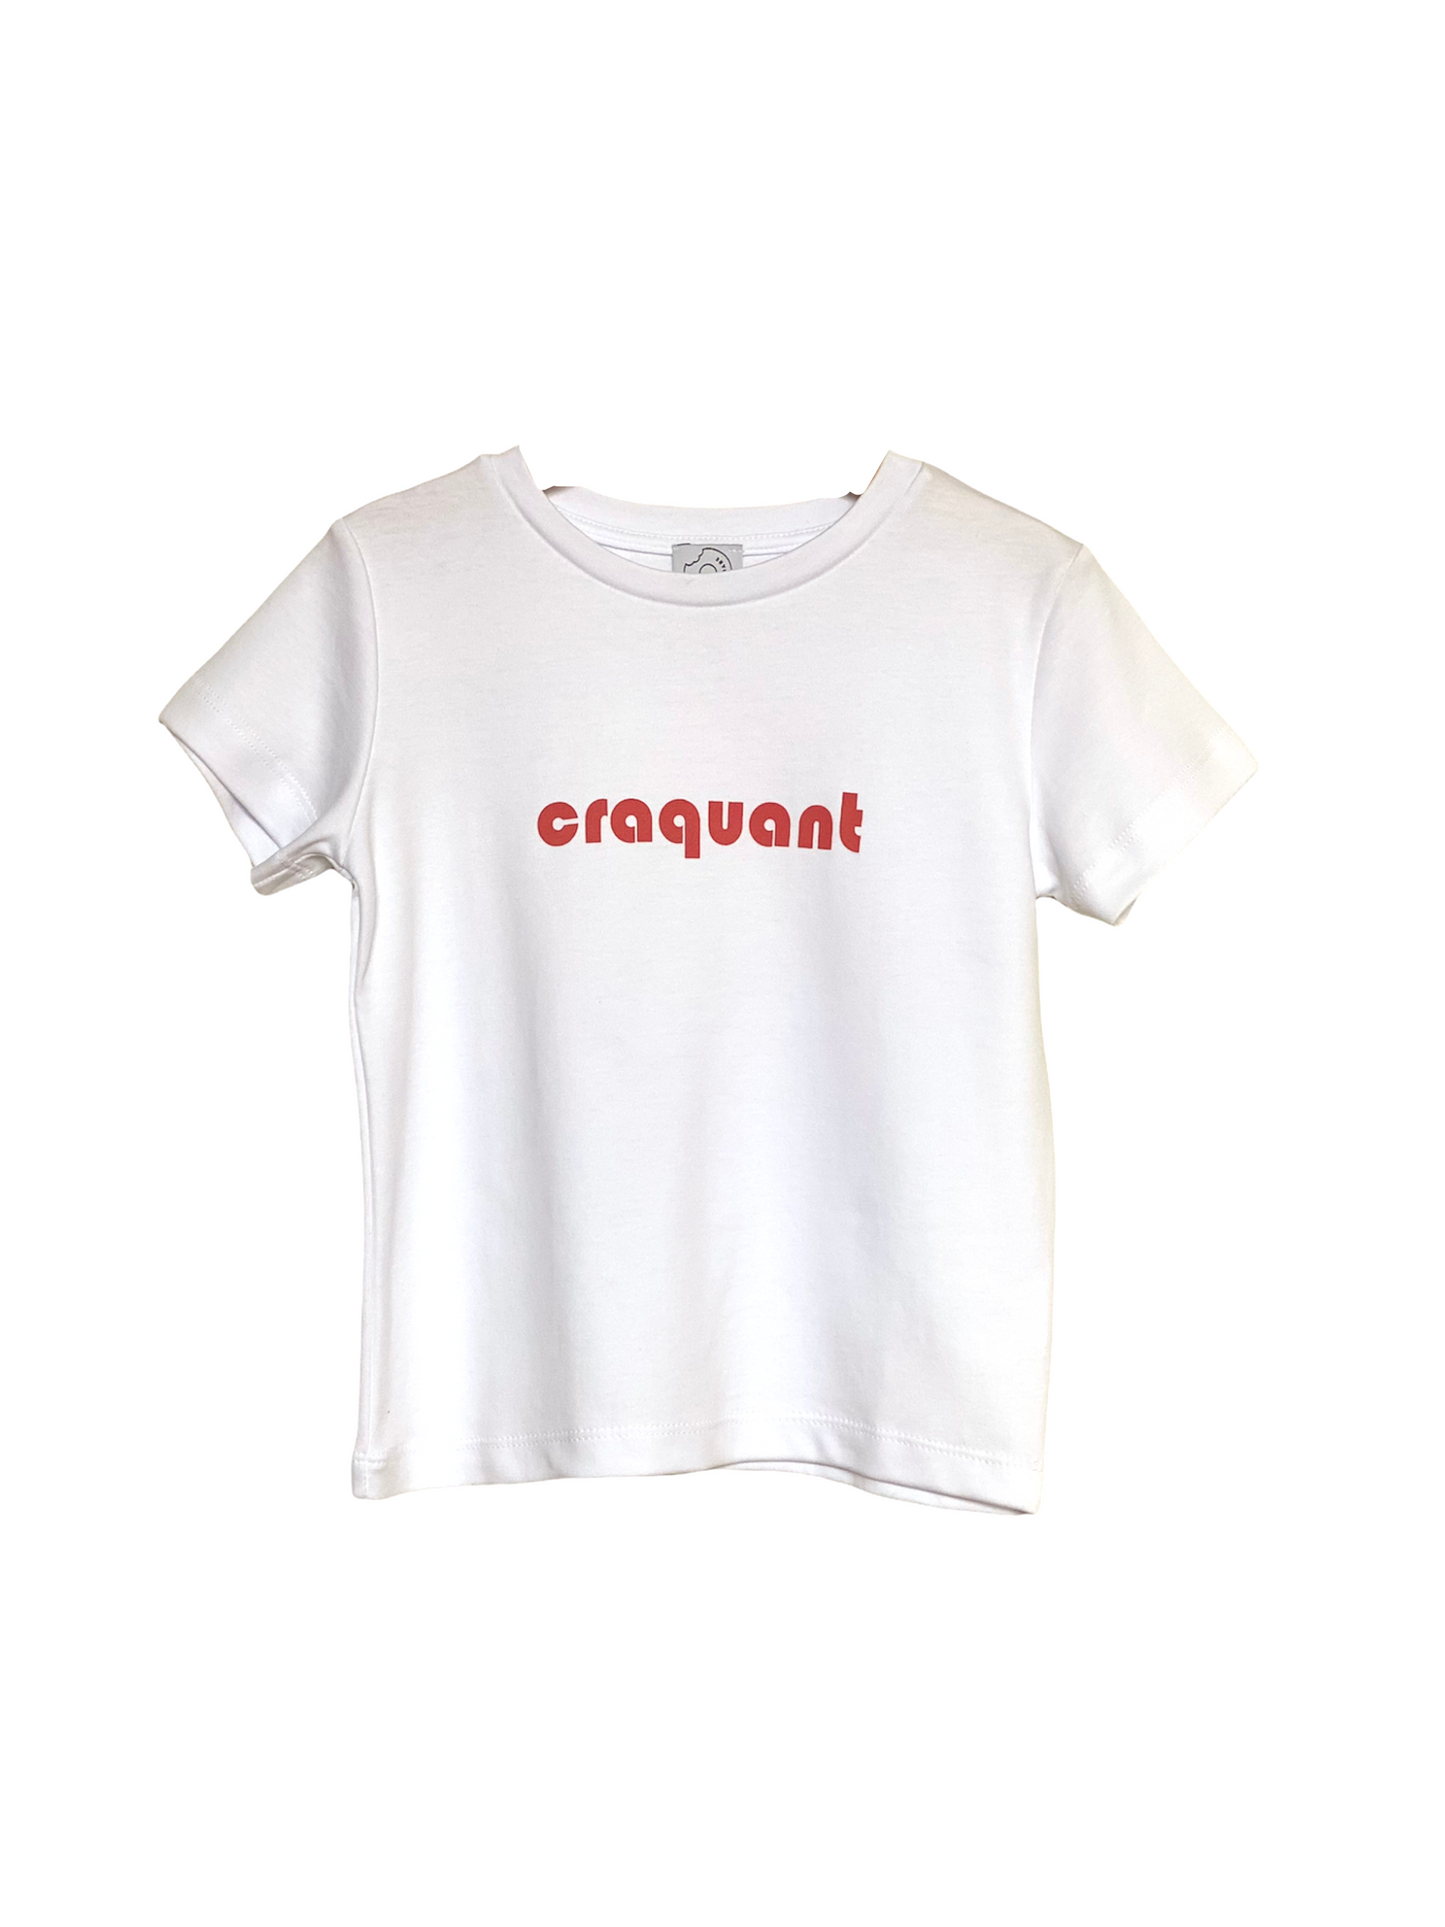 T-shirt "Craquant"